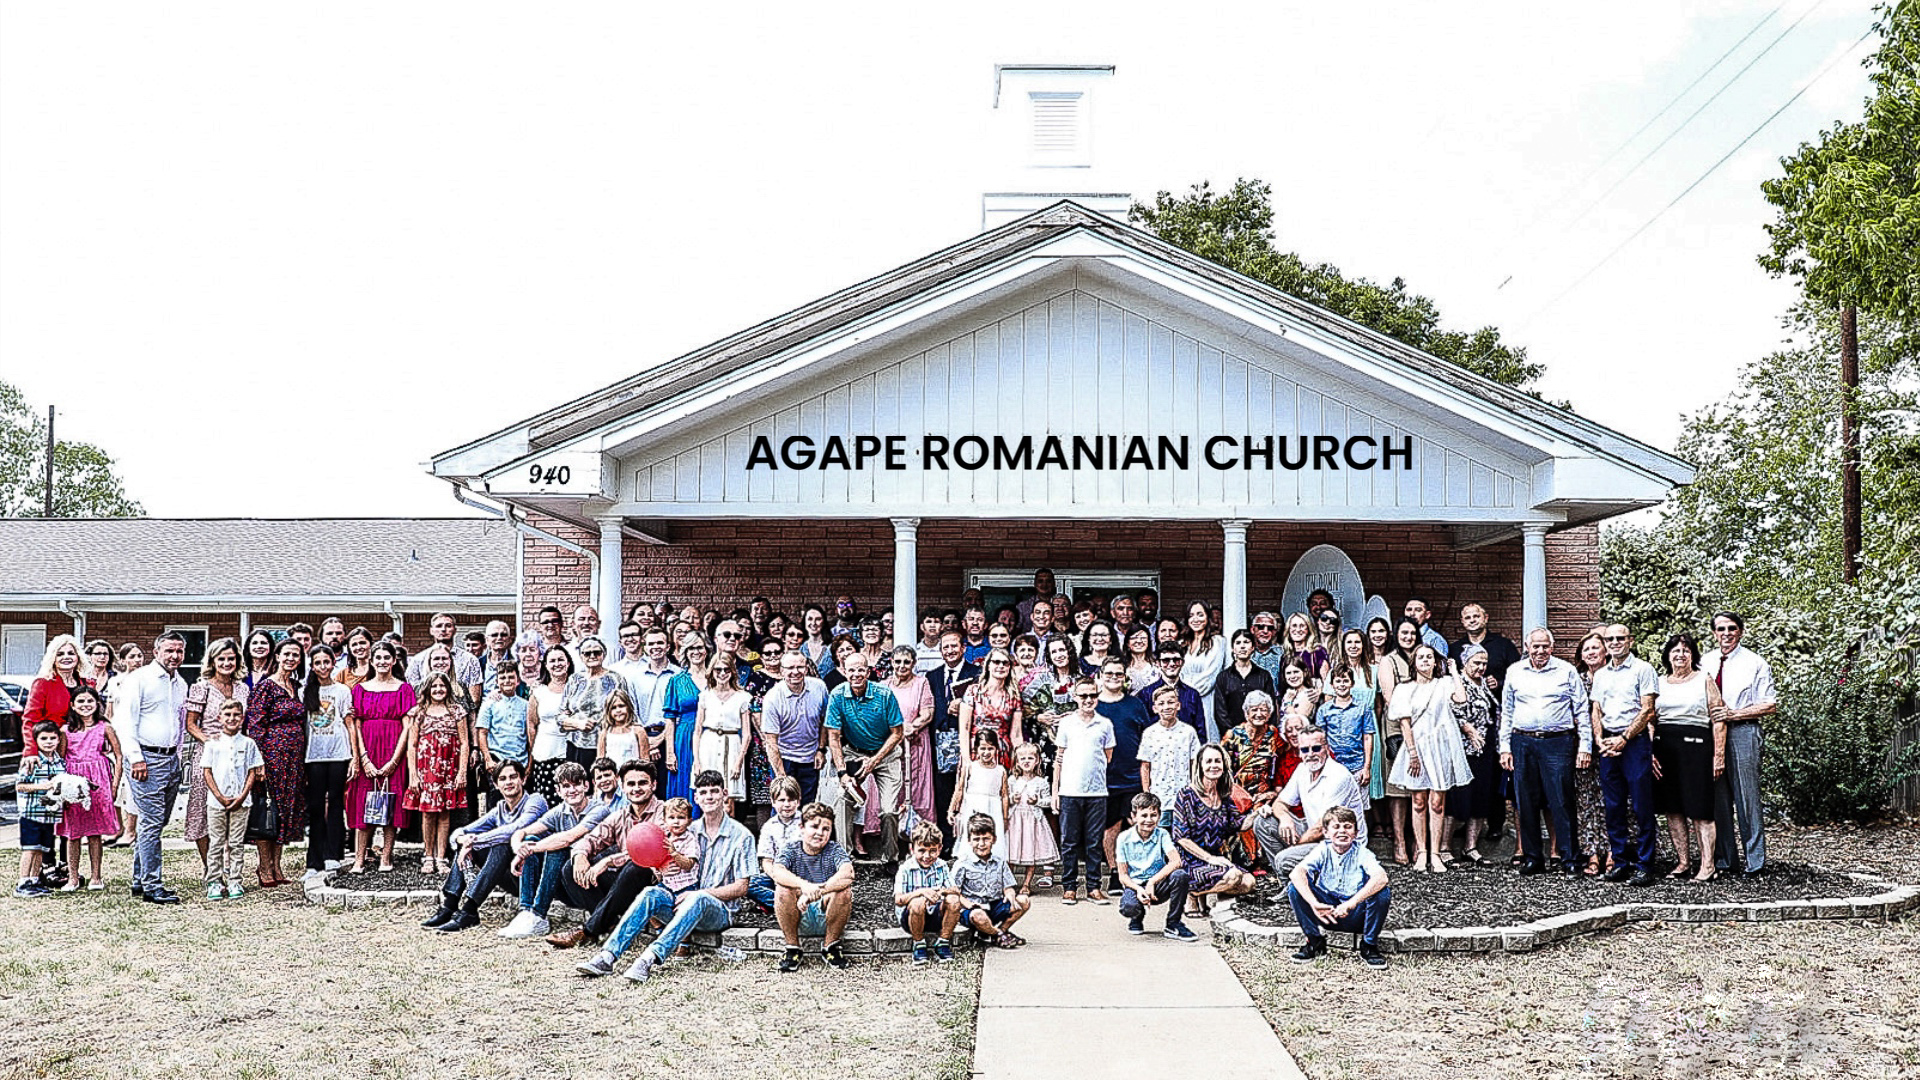 Agape Romanian Church